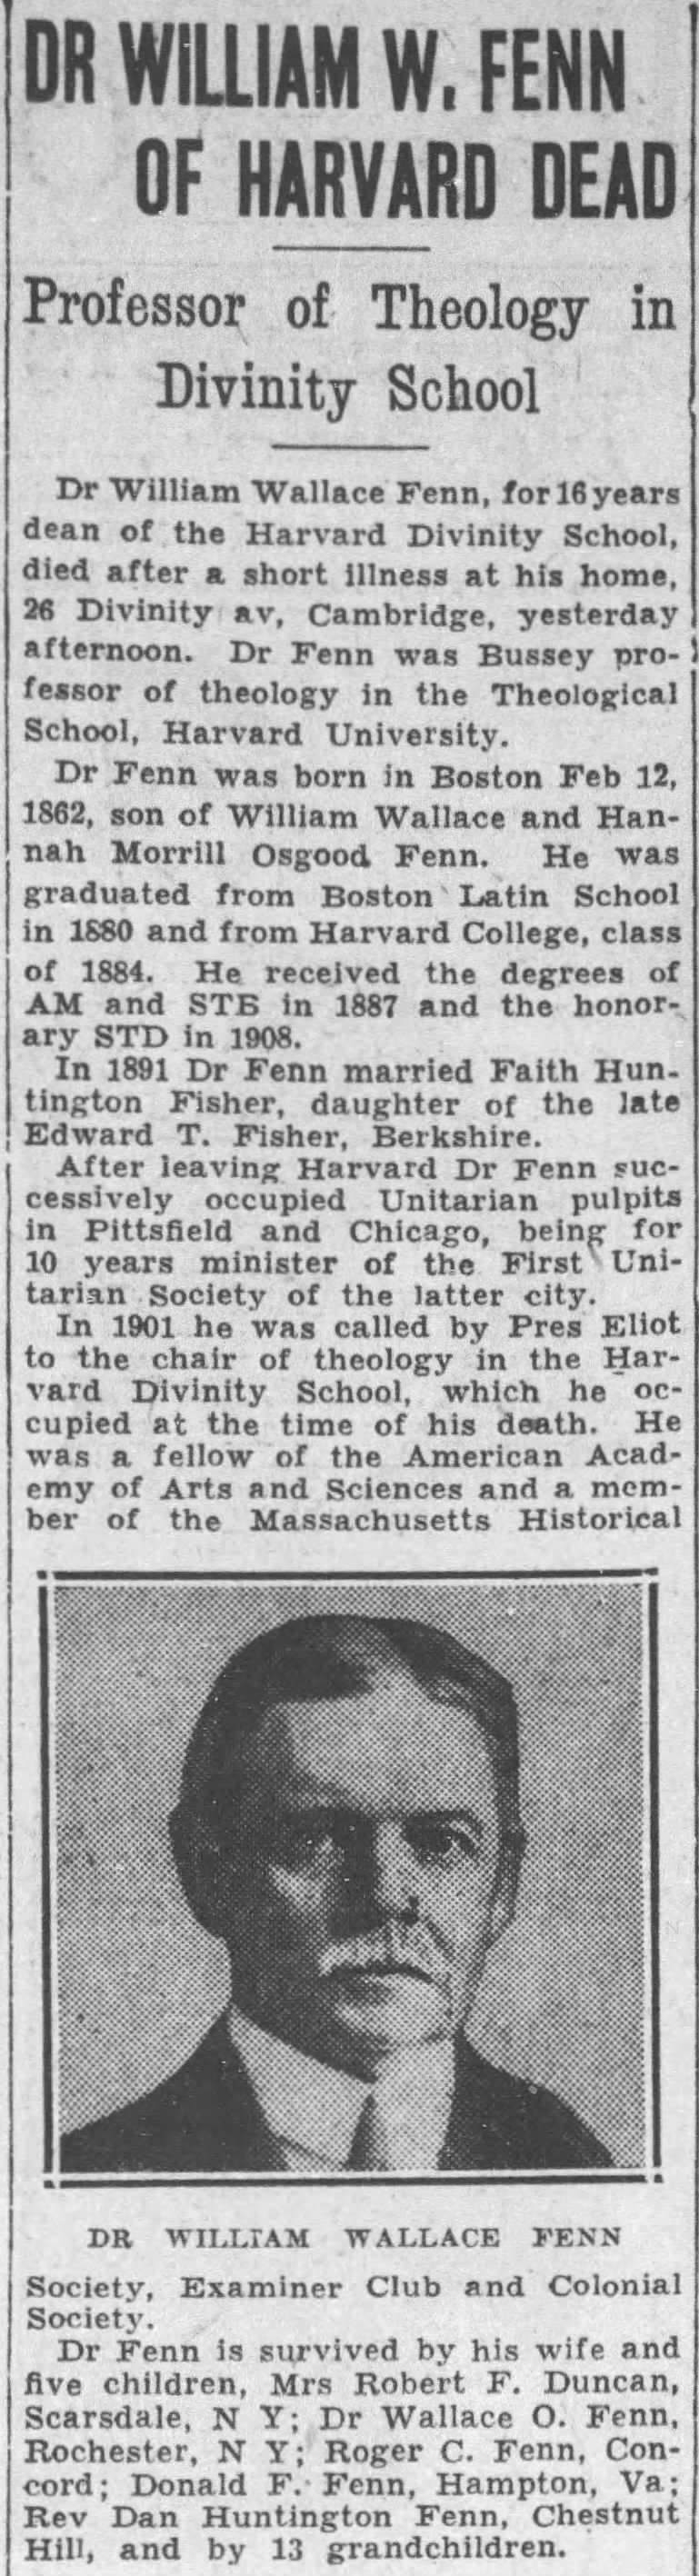 Dr William W. Fenn of Harvard Dead